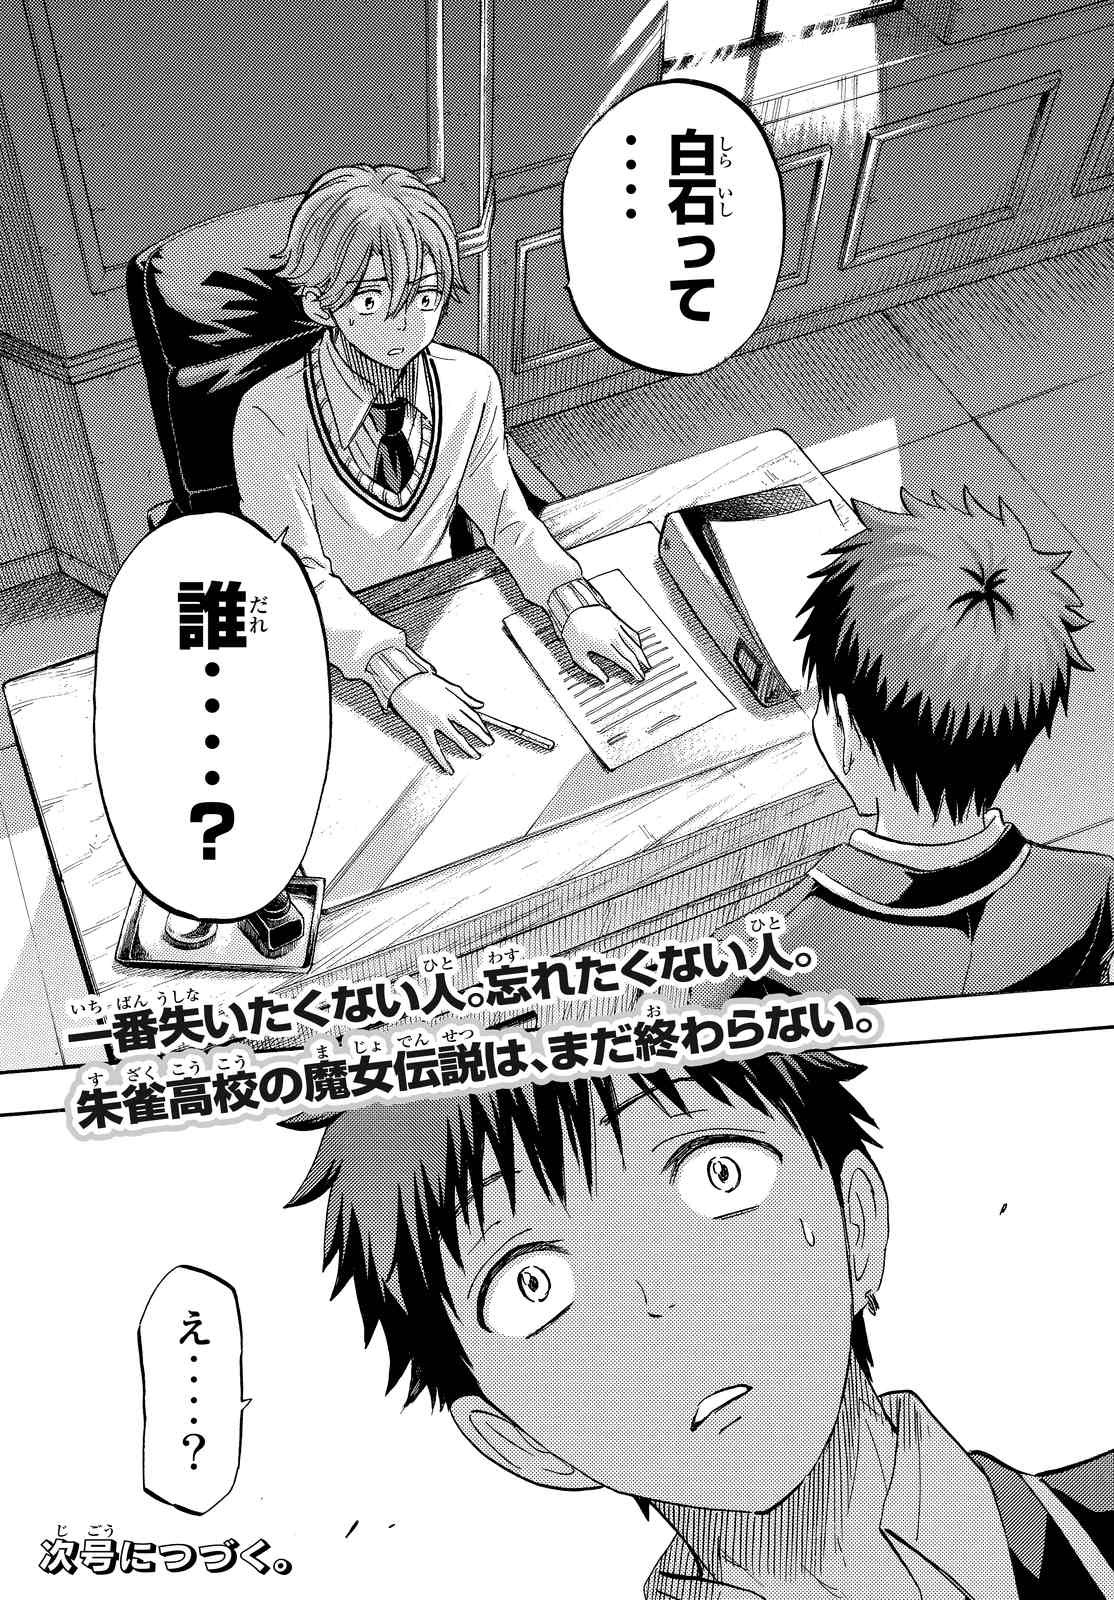 Yamada Kun To 7 Nin No Majo Chapter 235 Page Raw Manga 生漫画